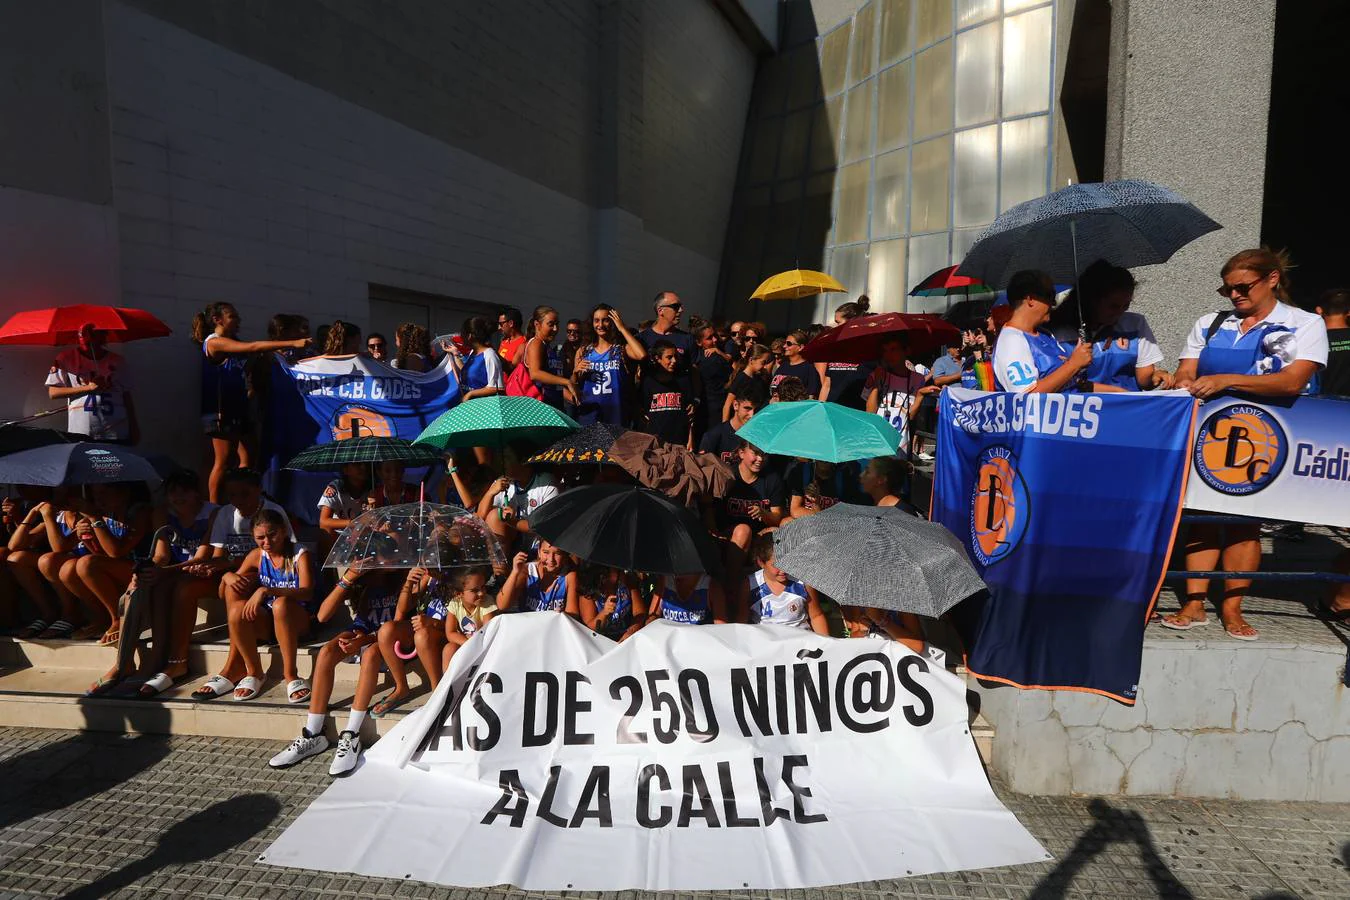 Los clubes de Cádiz protestan por el mal estado de las instalaciones deportivas